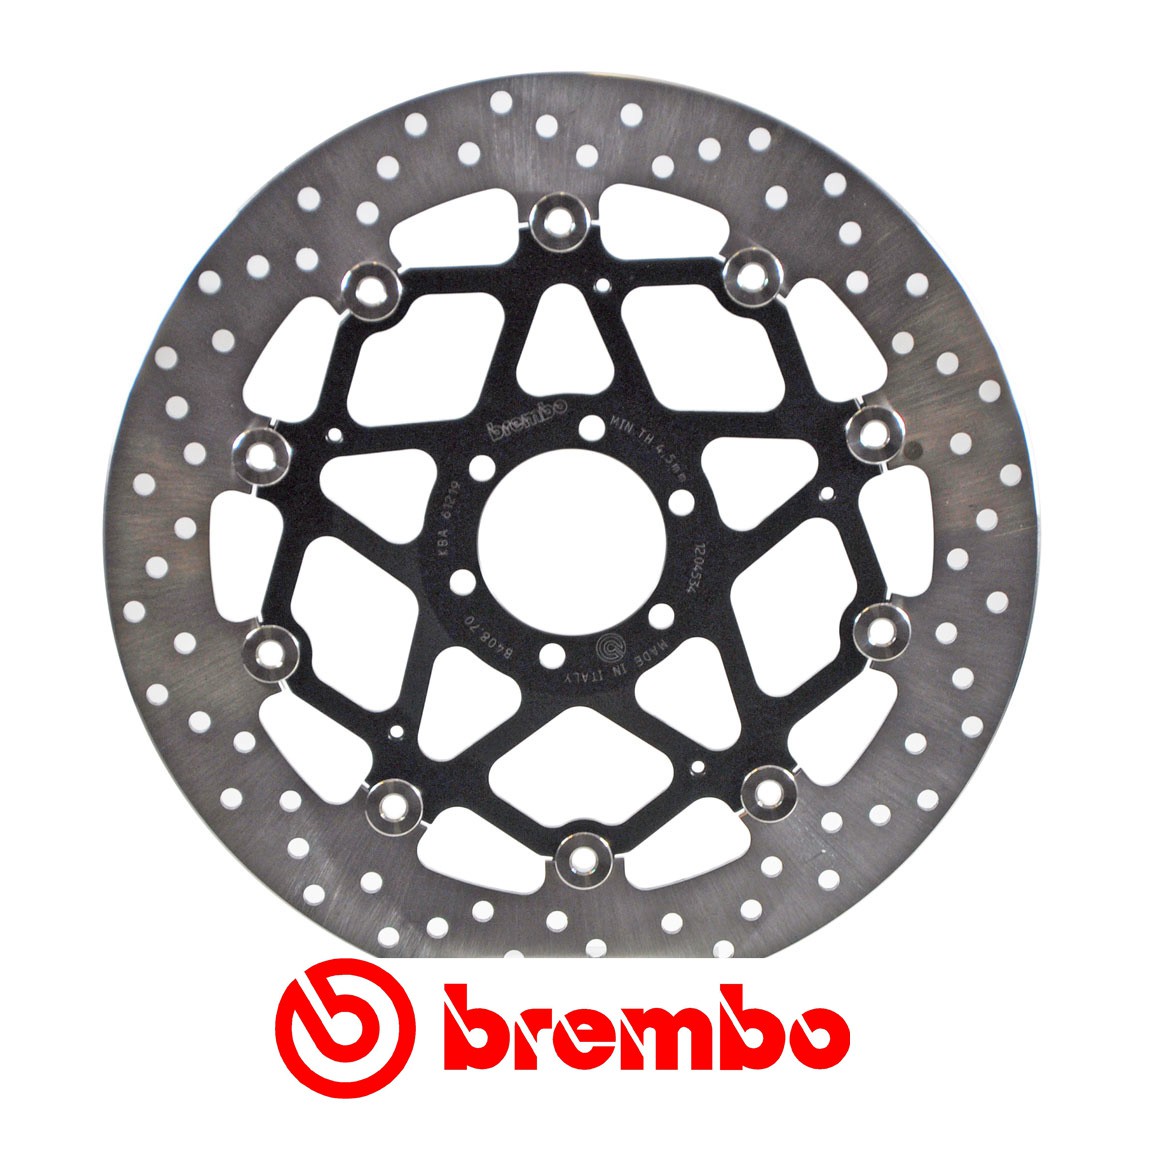 Disque de frein avant Brembo pour Benelli TRE-K 899 (07-17)